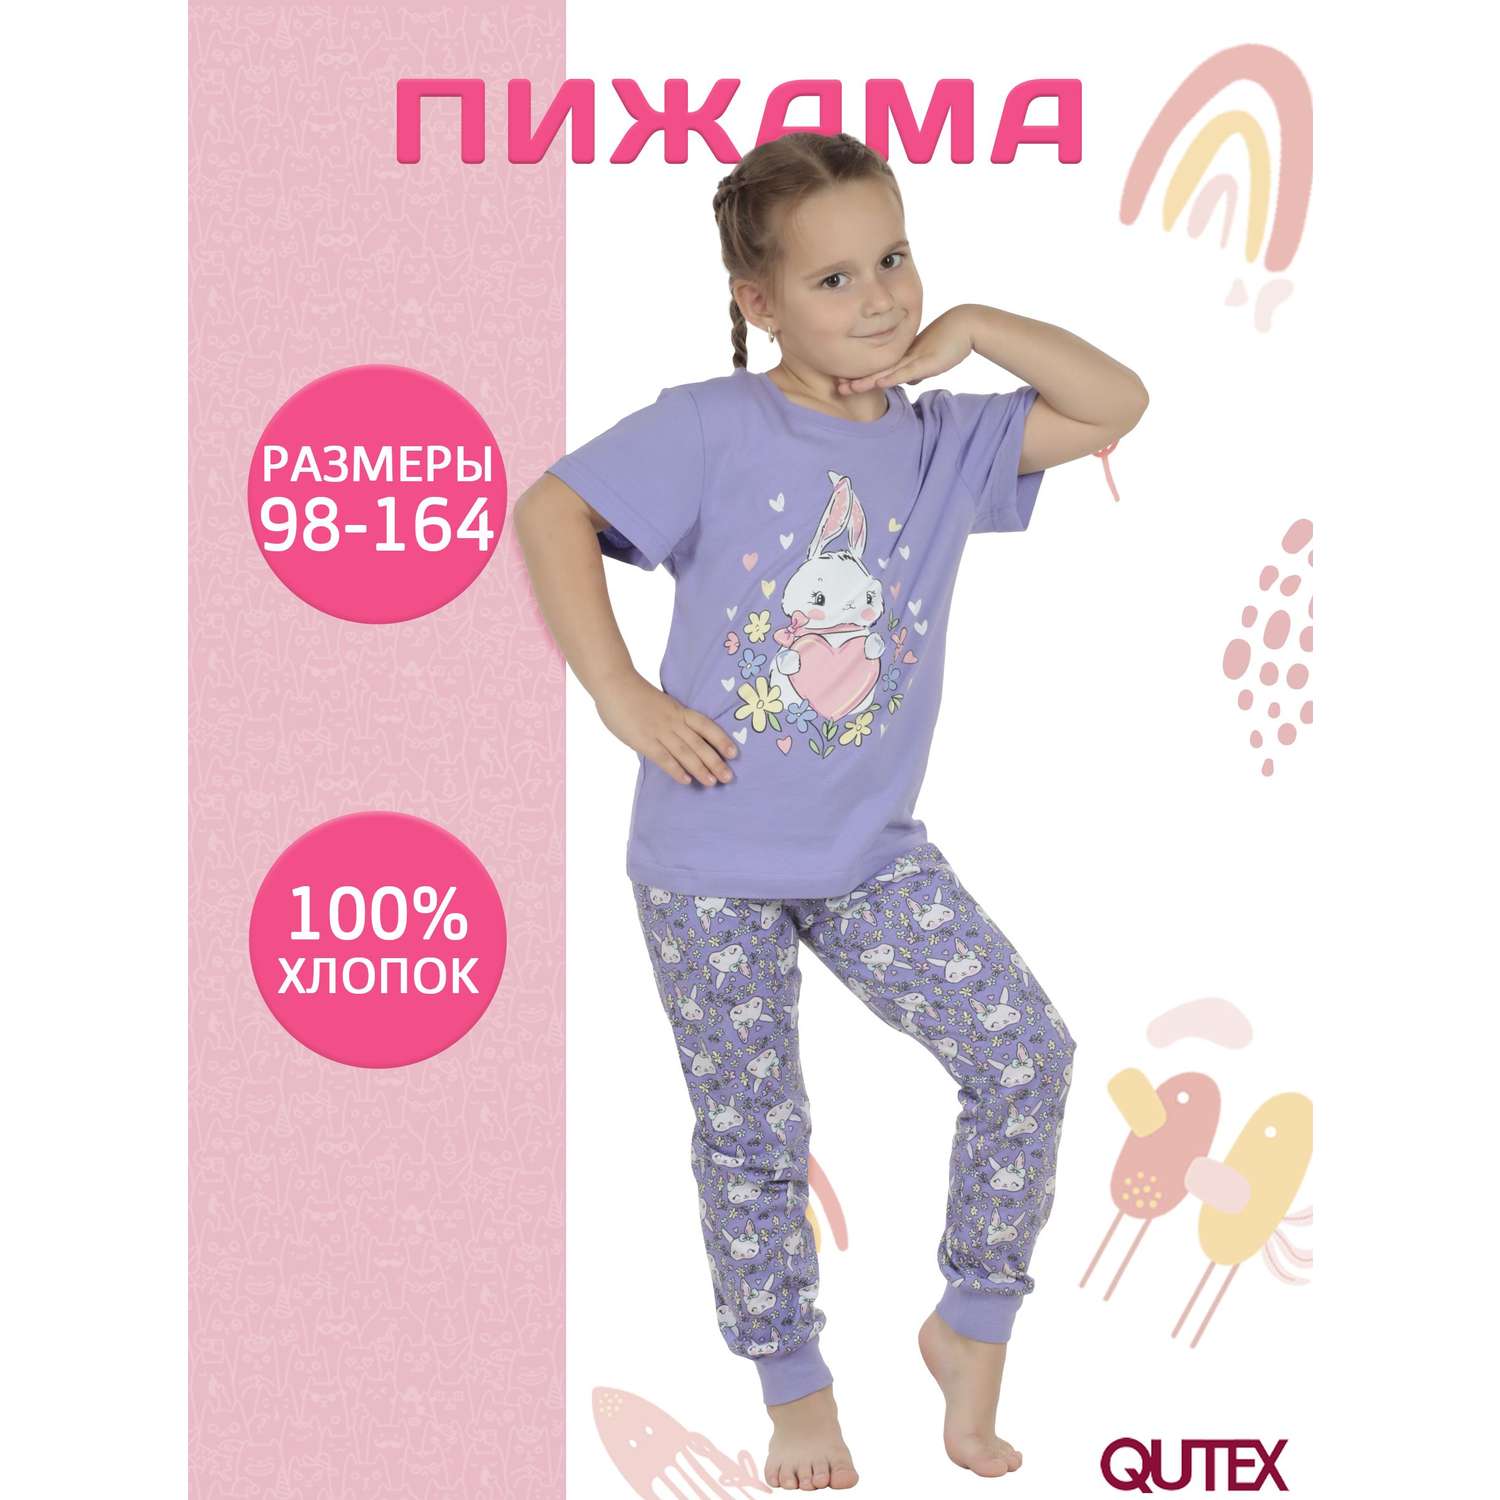 Пижама QUTEX 2301-002-1Q64 - фото 2